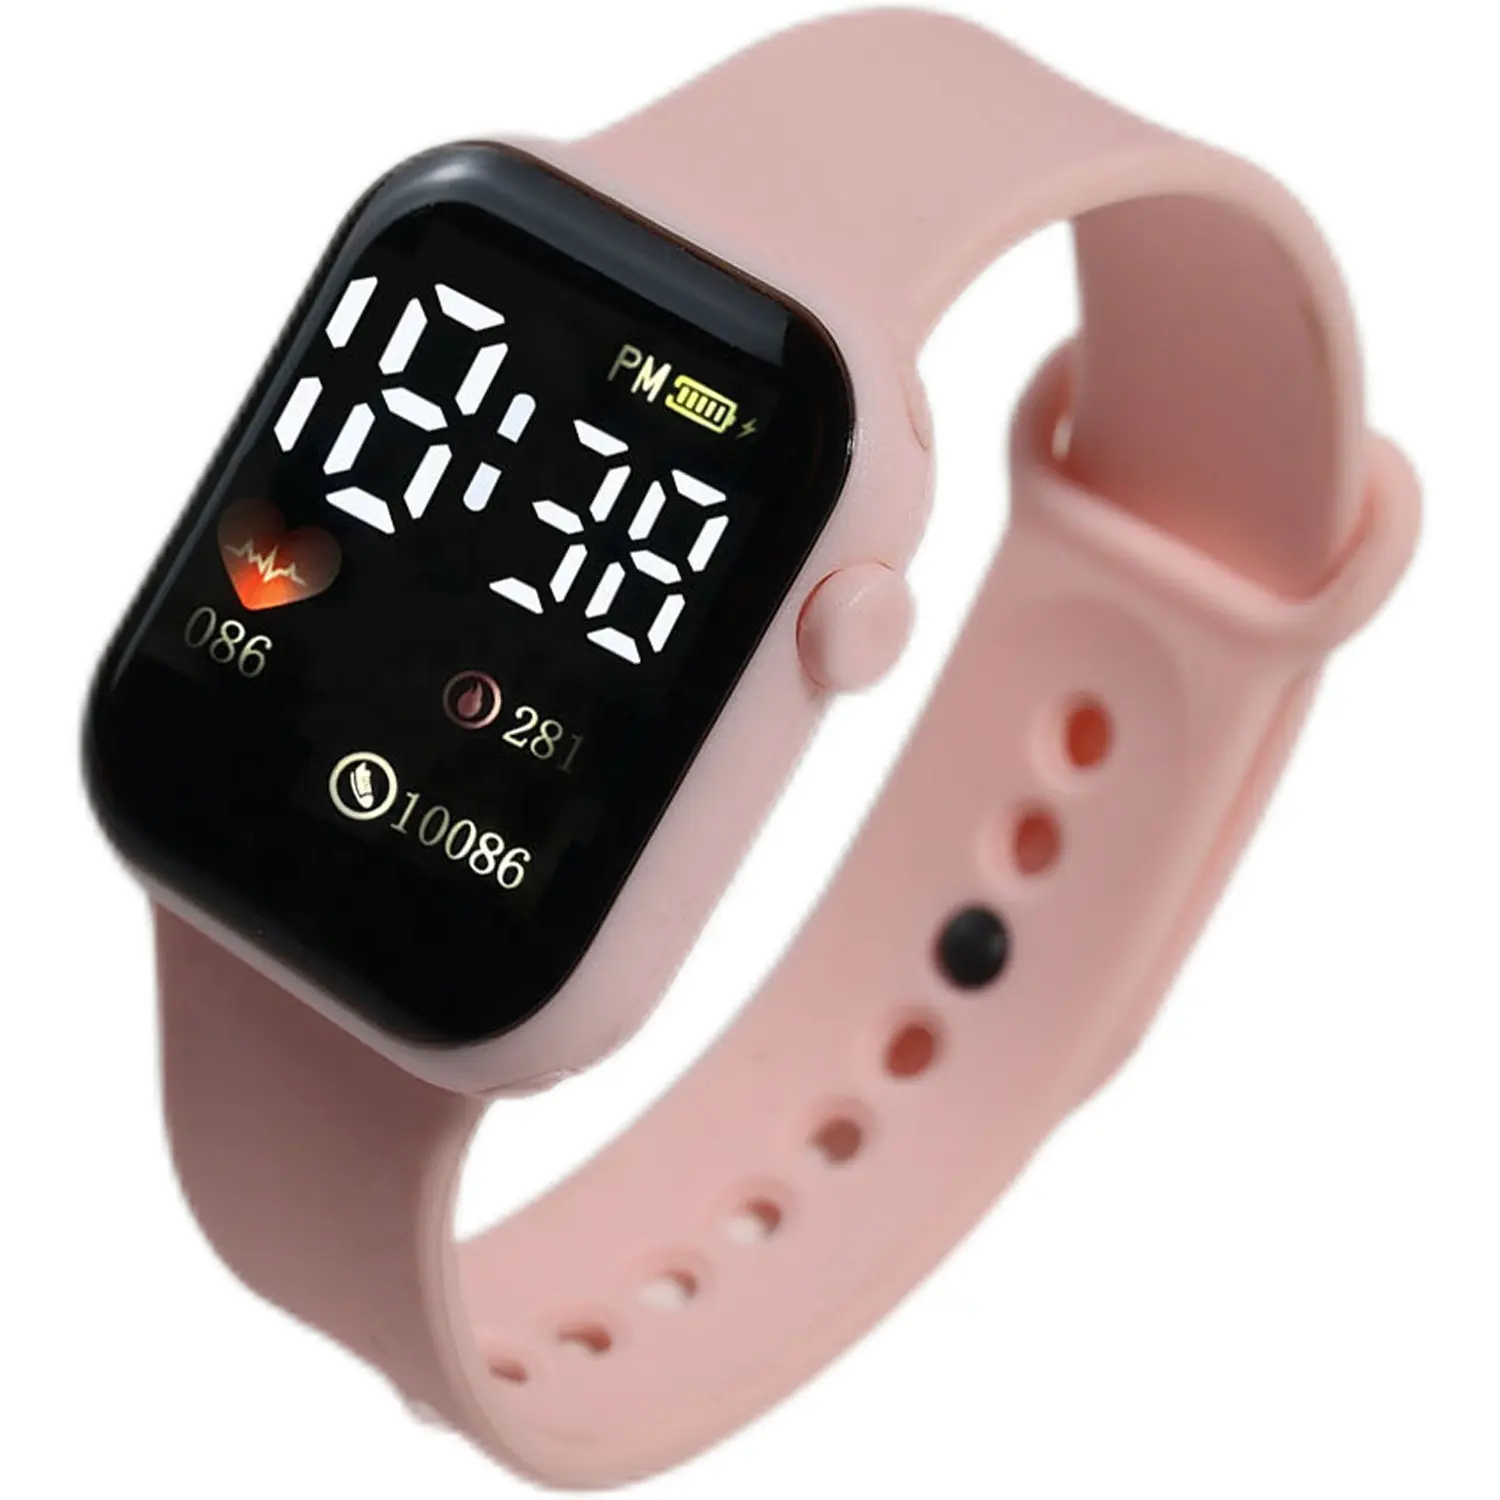 Best selling Cheaper Y1 fashion led Sport Wrist watch Antique Low cost Kids digital electronic watch for men women girl boy